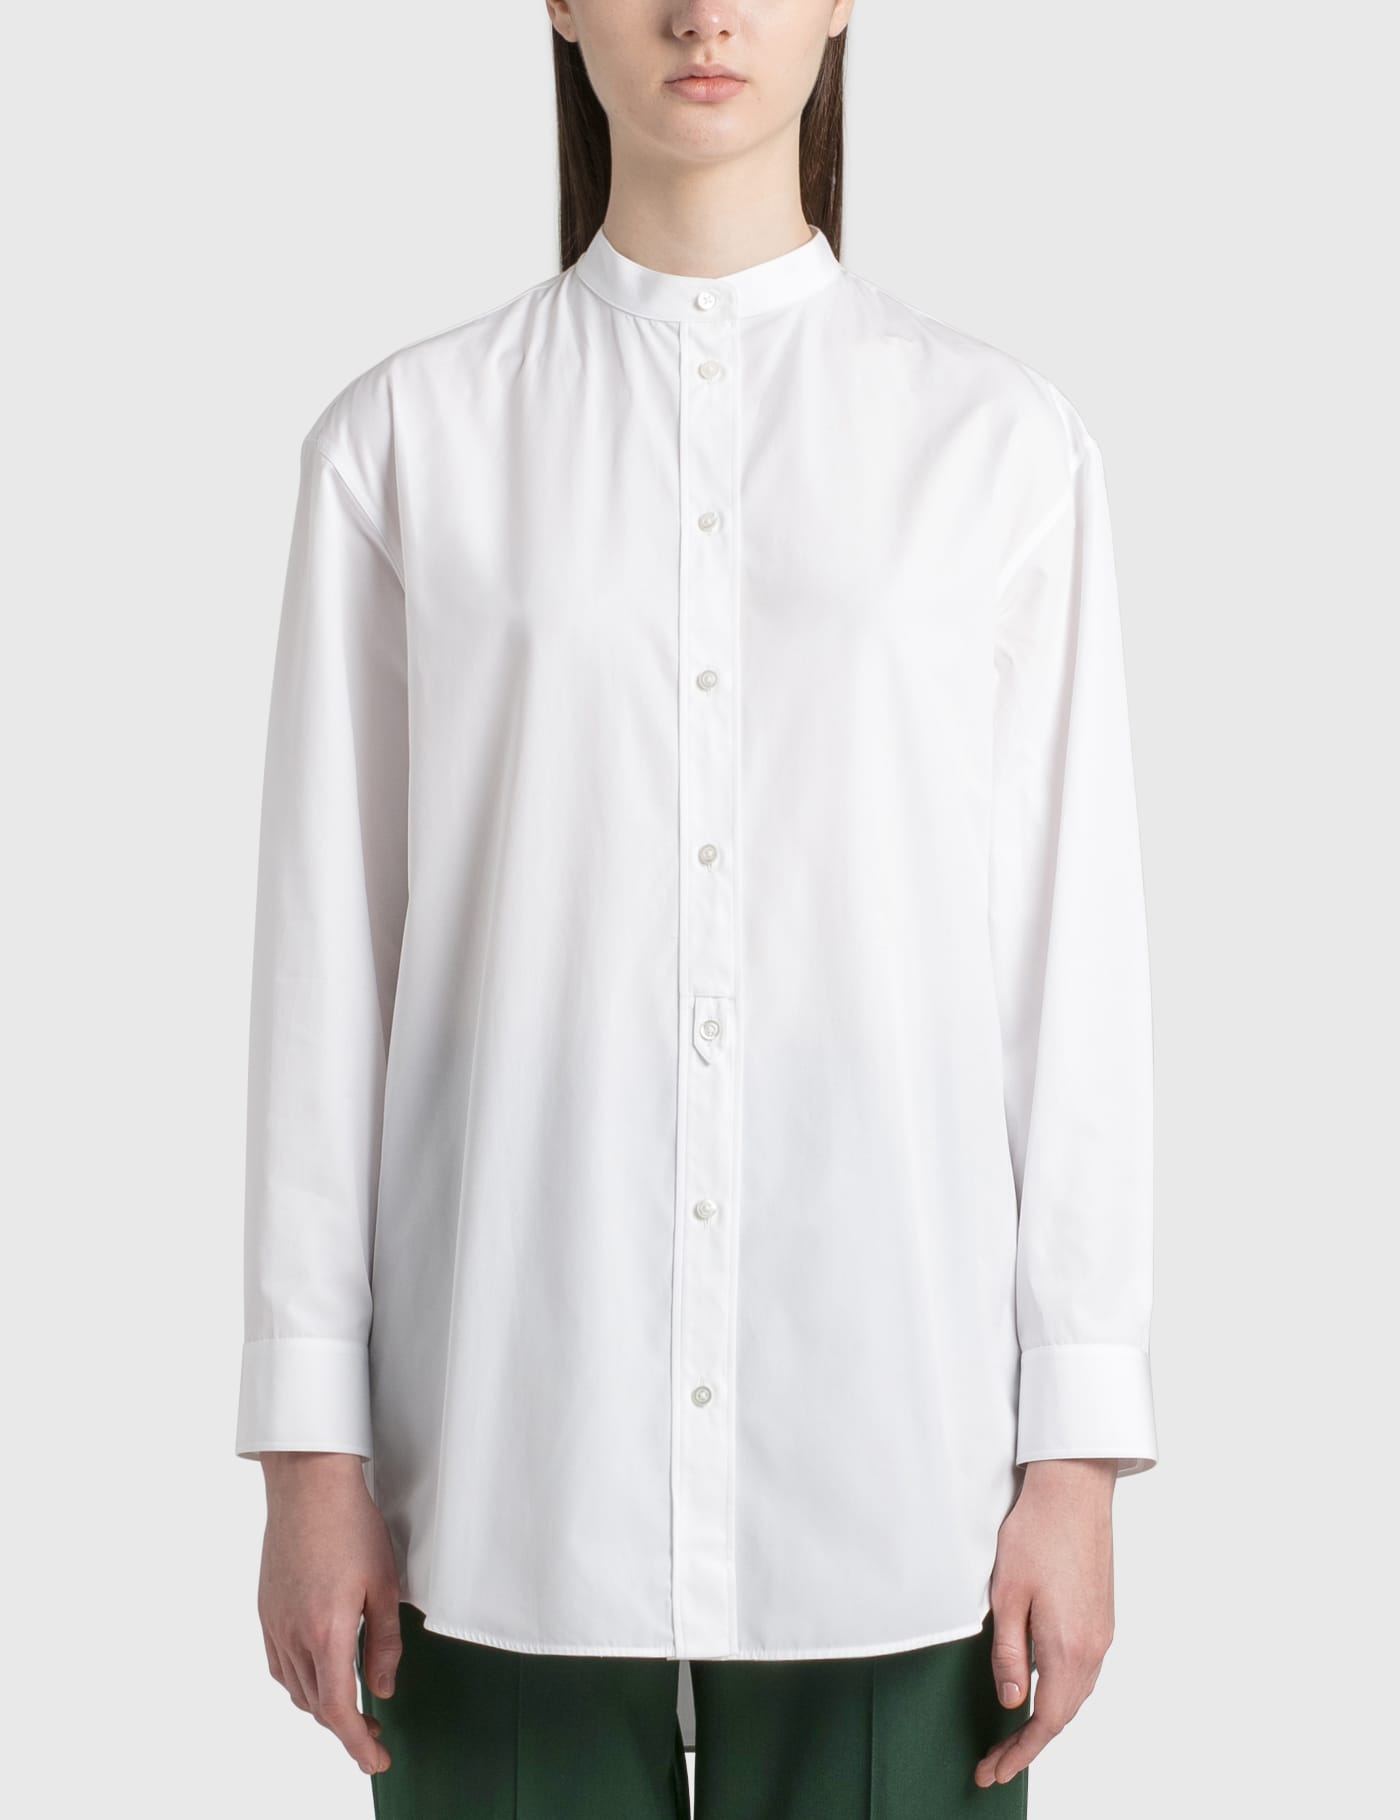 Jil Sander - Organic Poplin Shirt | HBX - Globally Curated Fashion 